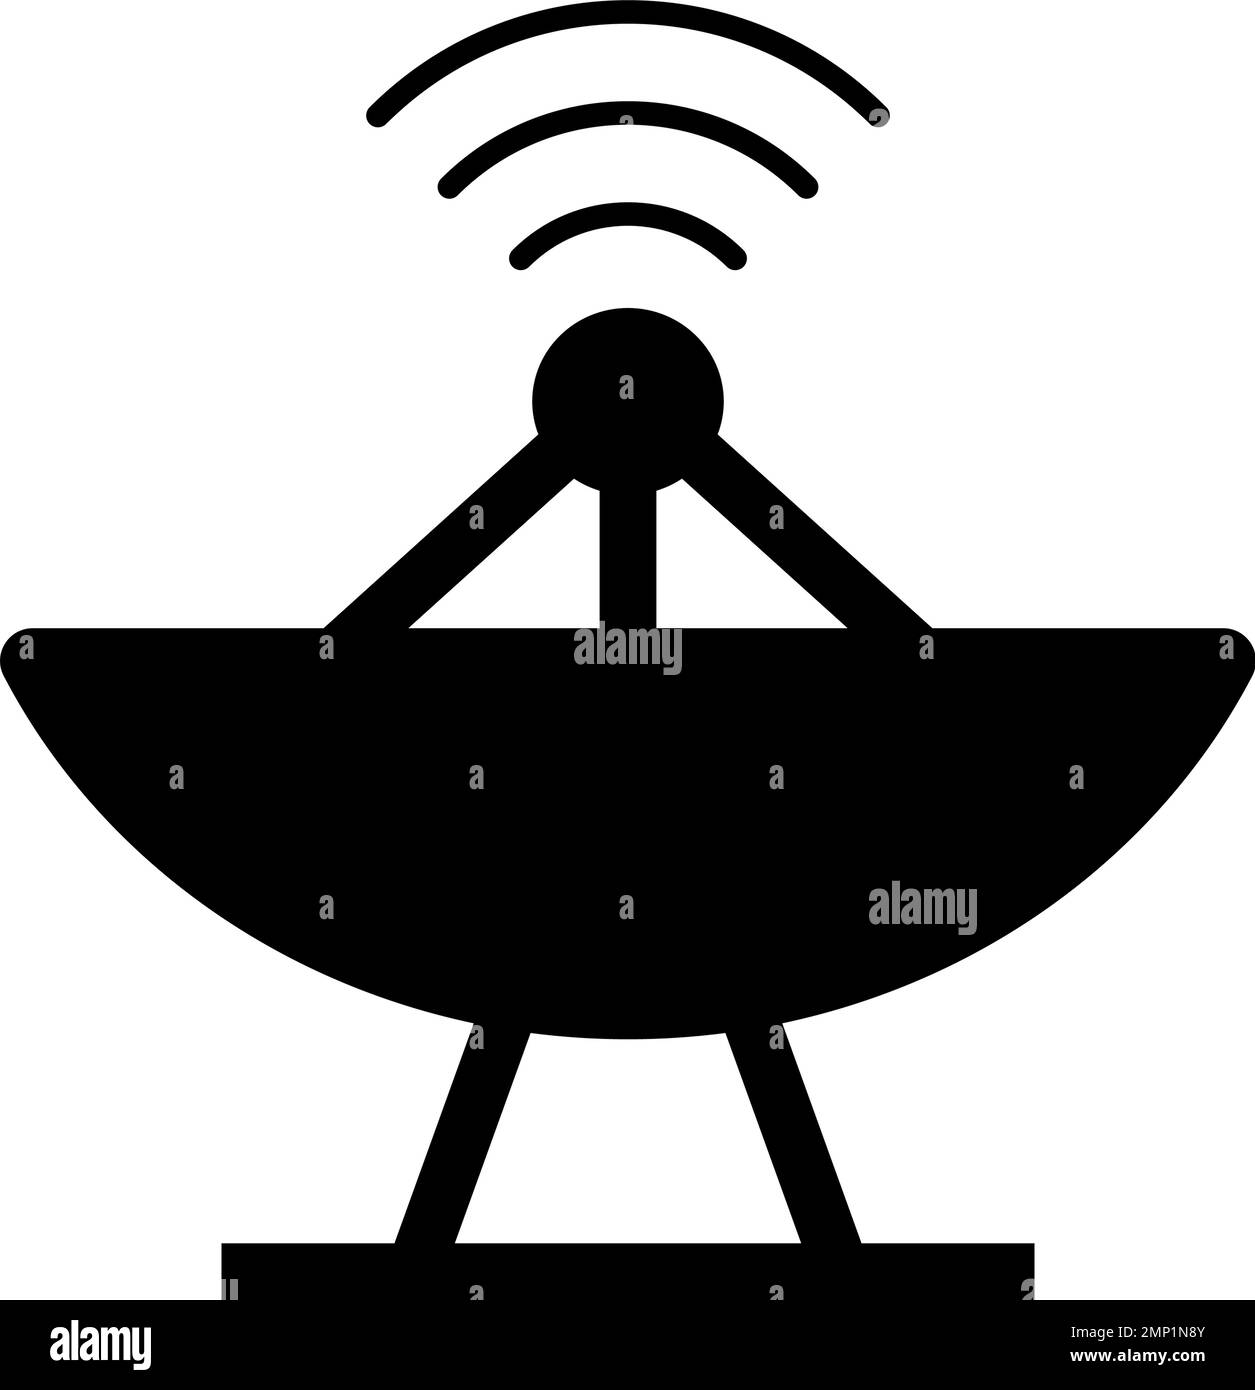 Parabolic antenna silhouette icon. Editable vector. Stock Vector